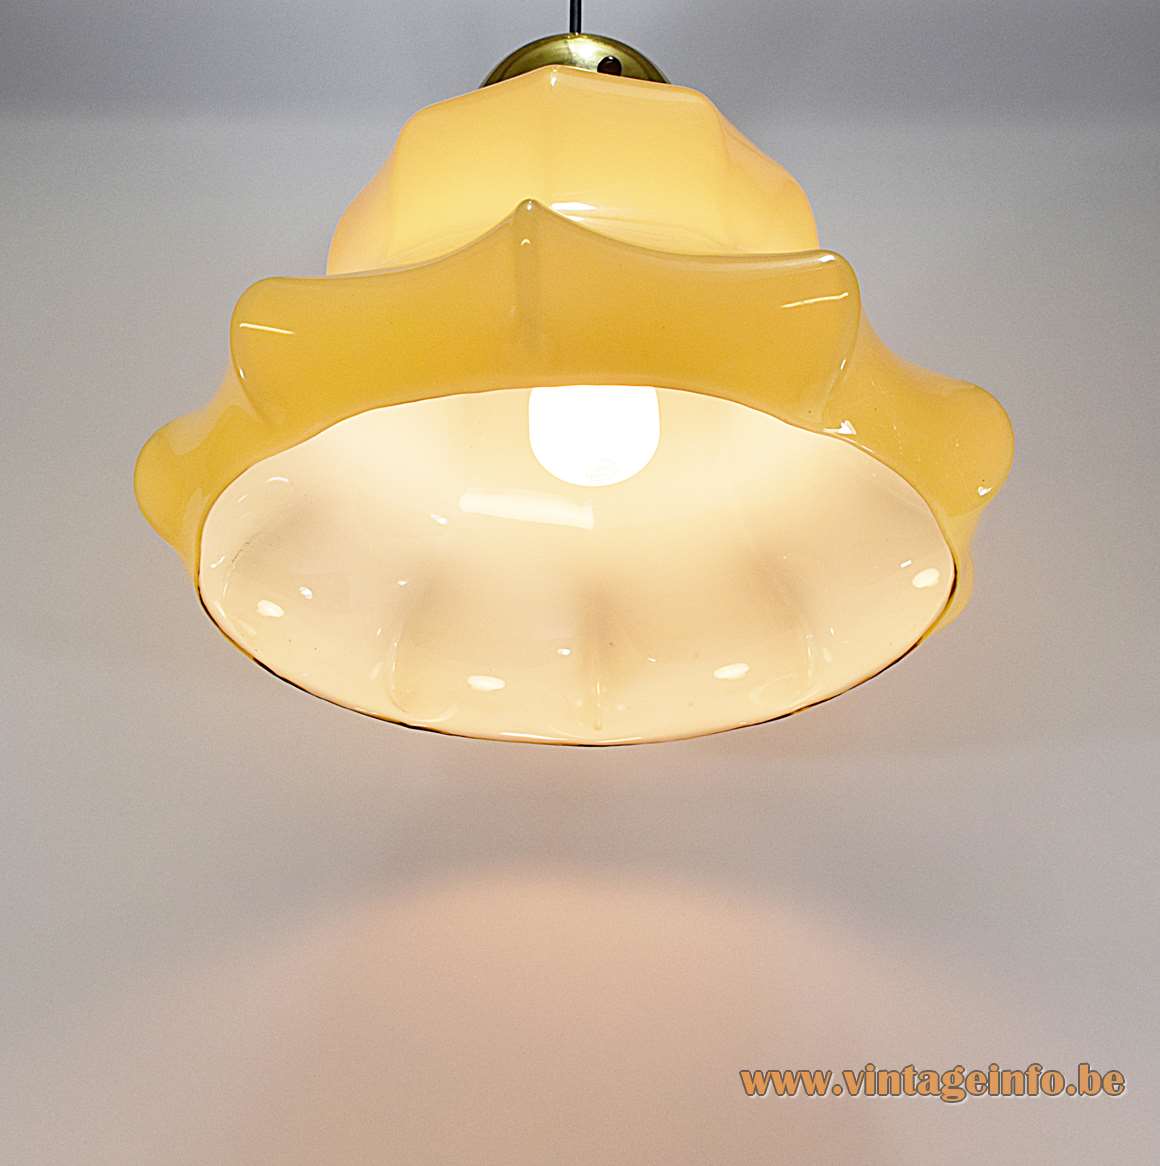 Peill + Putzler vanilla skirt pendant lamp beige yellow glass handkerchief lampshade 1960s 1970s Germany E27 socket